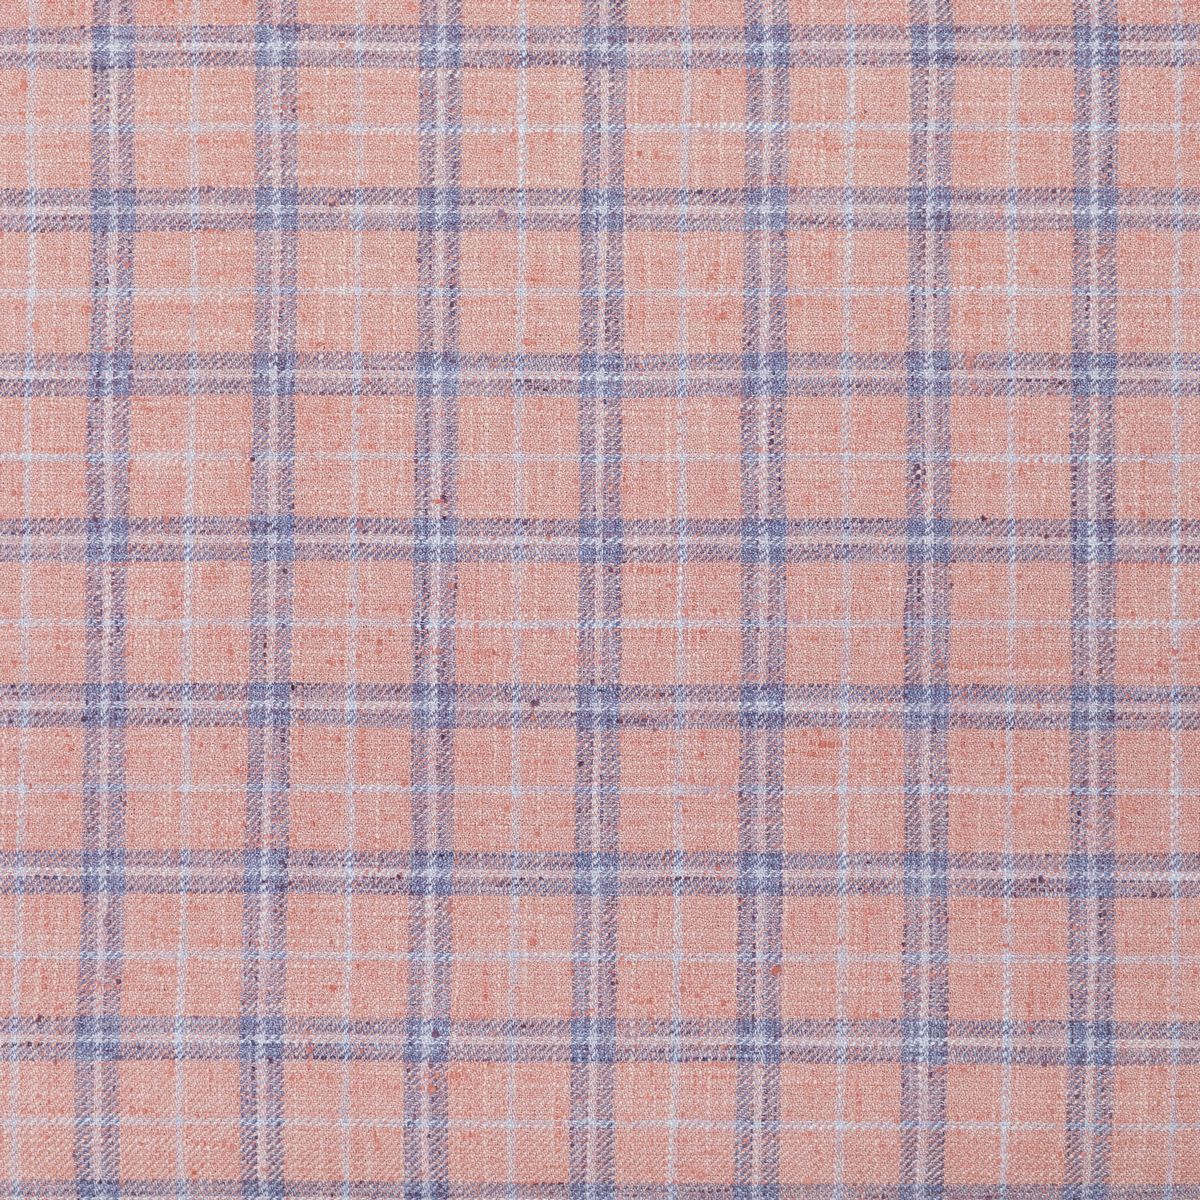 Painswick Blush Fabric by Voyage Maison